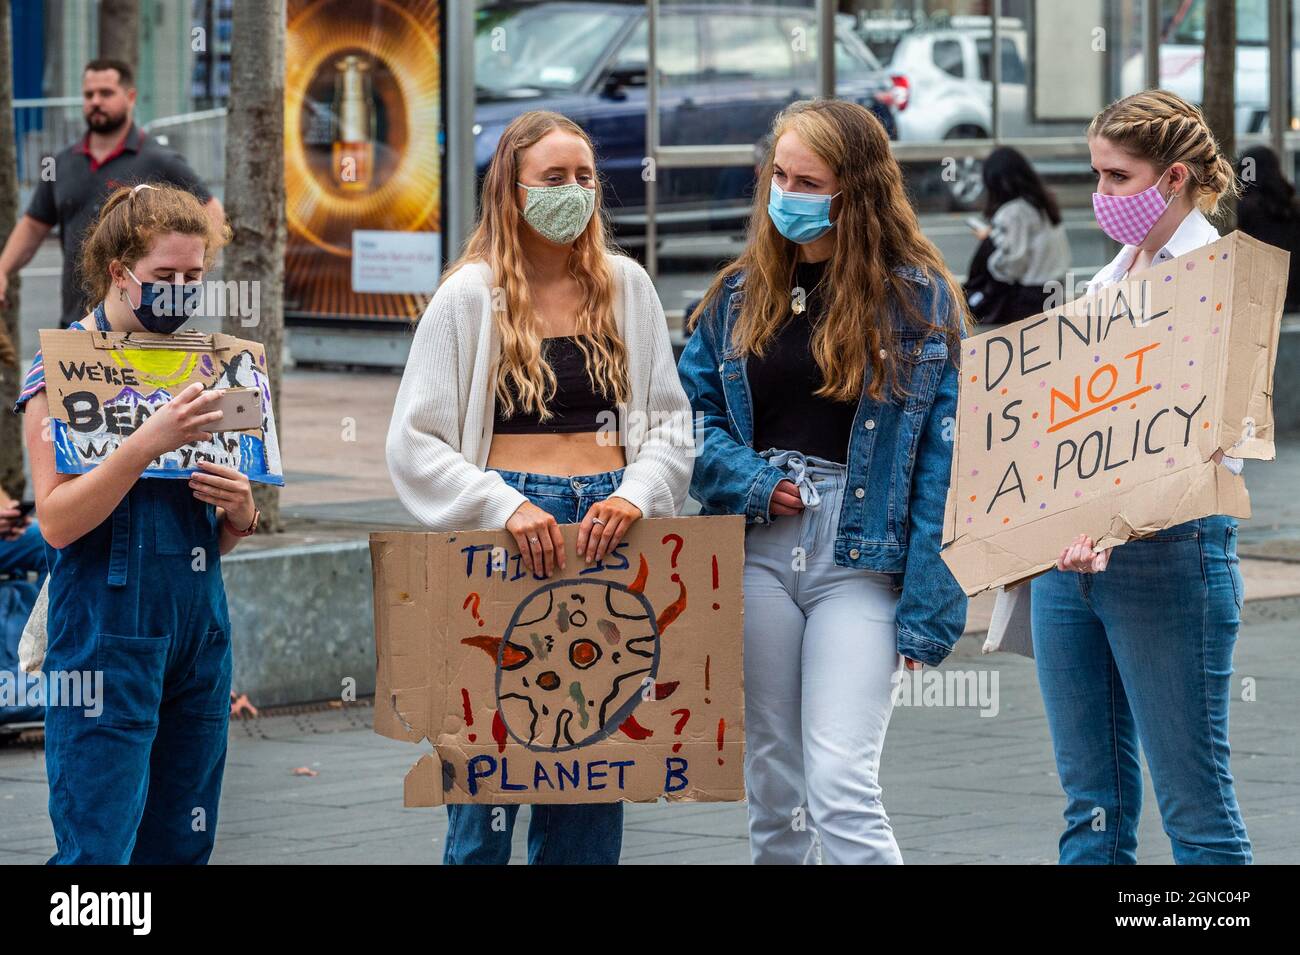 Cork, Irlanda. 24th de Sep de 2021. Friday for Future celebró hoy una huelga climática global en Grand Parade en la ciudad de Cork, exigiendo justicia climática dentro de Irlanda y alrededor del mundo. La mayoría de los manifestantes tenían señales y carteles. Crédito: AG News/Alamy Live News Foto de stock